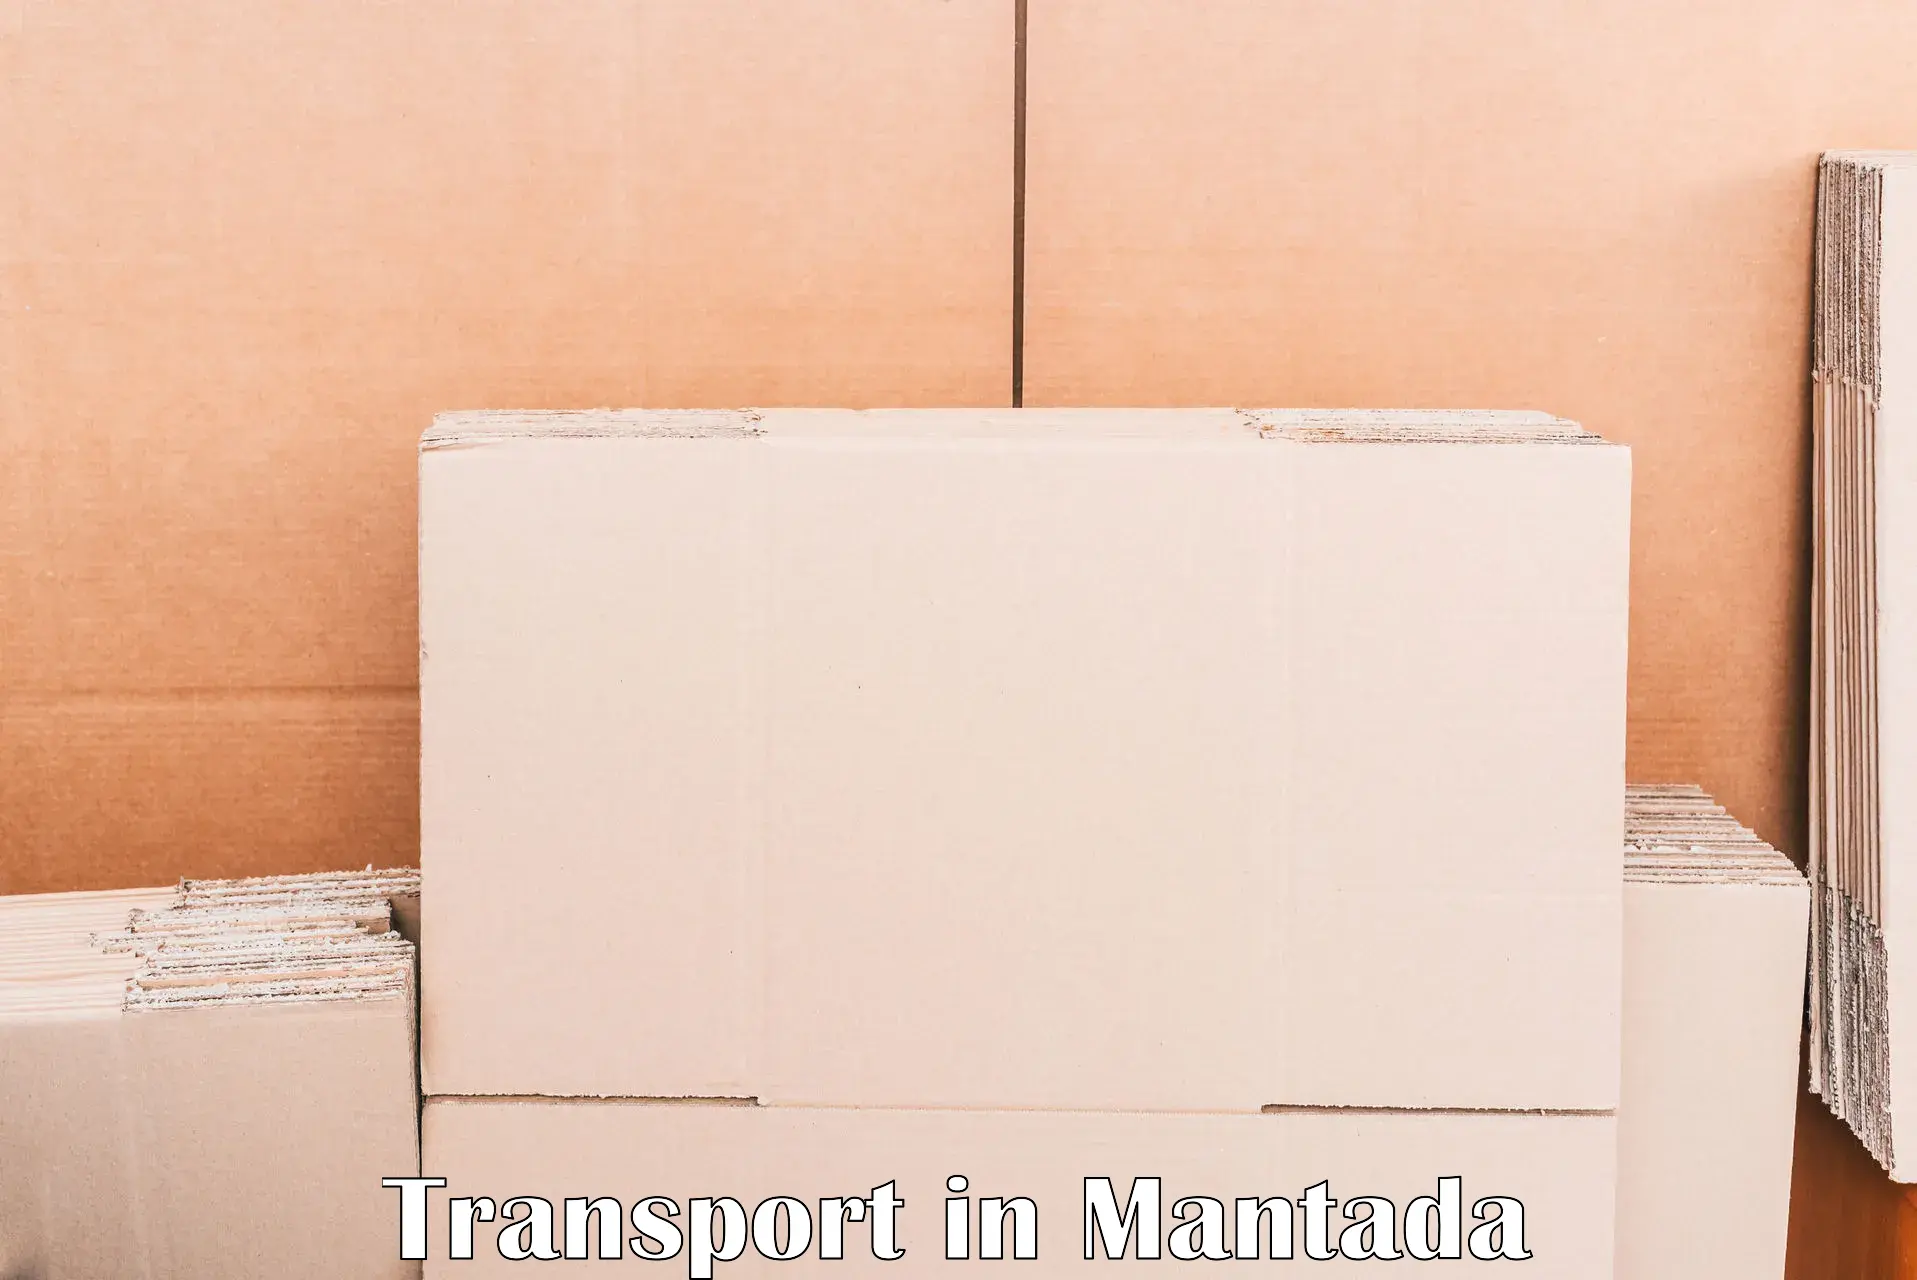 Transportation services in Mantada